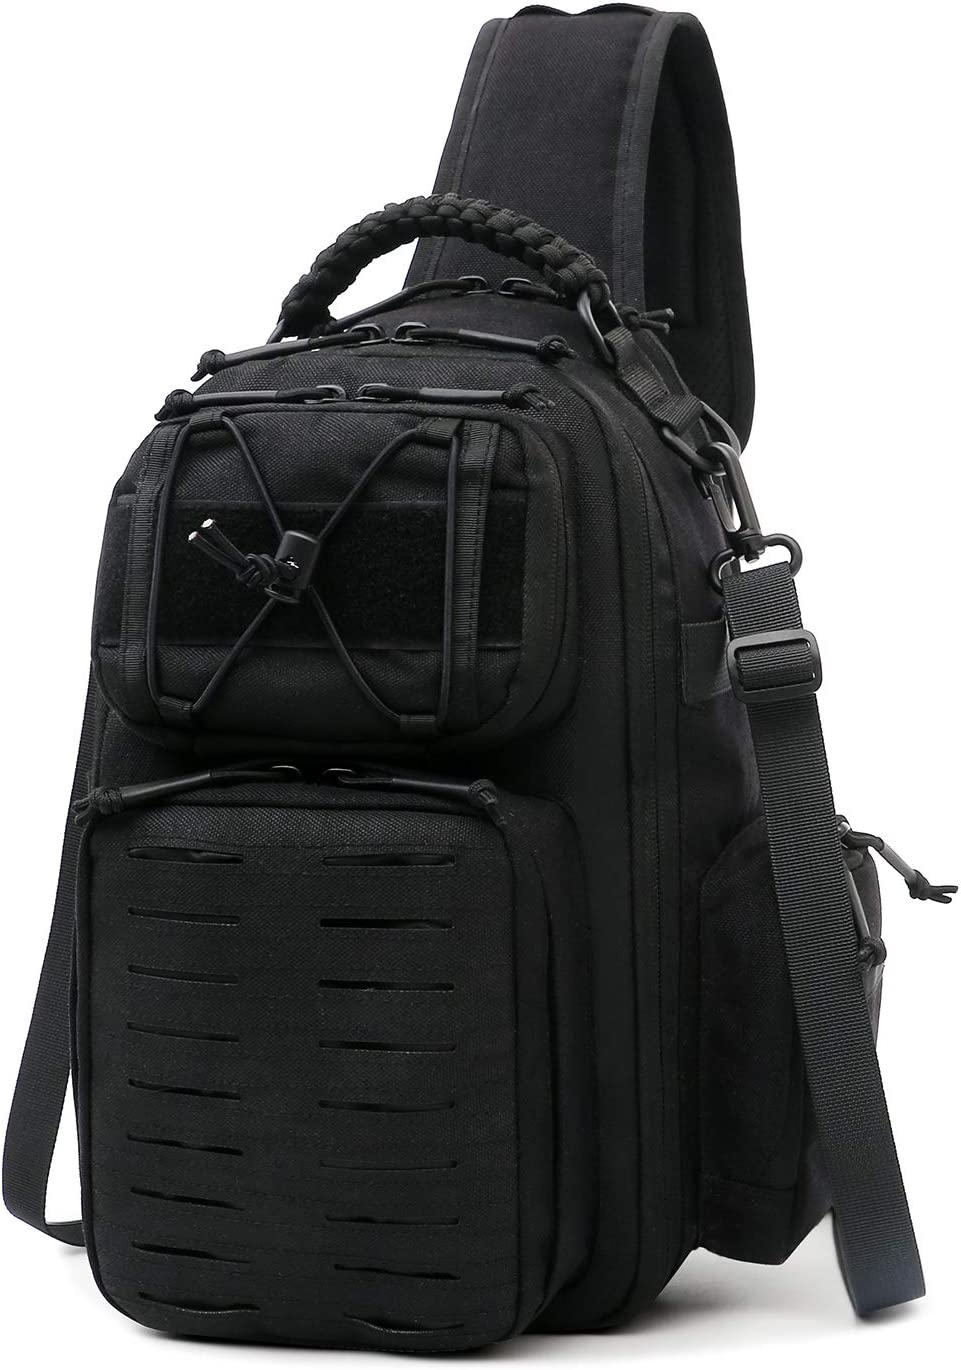 ANTARCTICA Tactical Sling Bag Men Military Backpack Shoulder Bag Molle Pack Assault DayPack